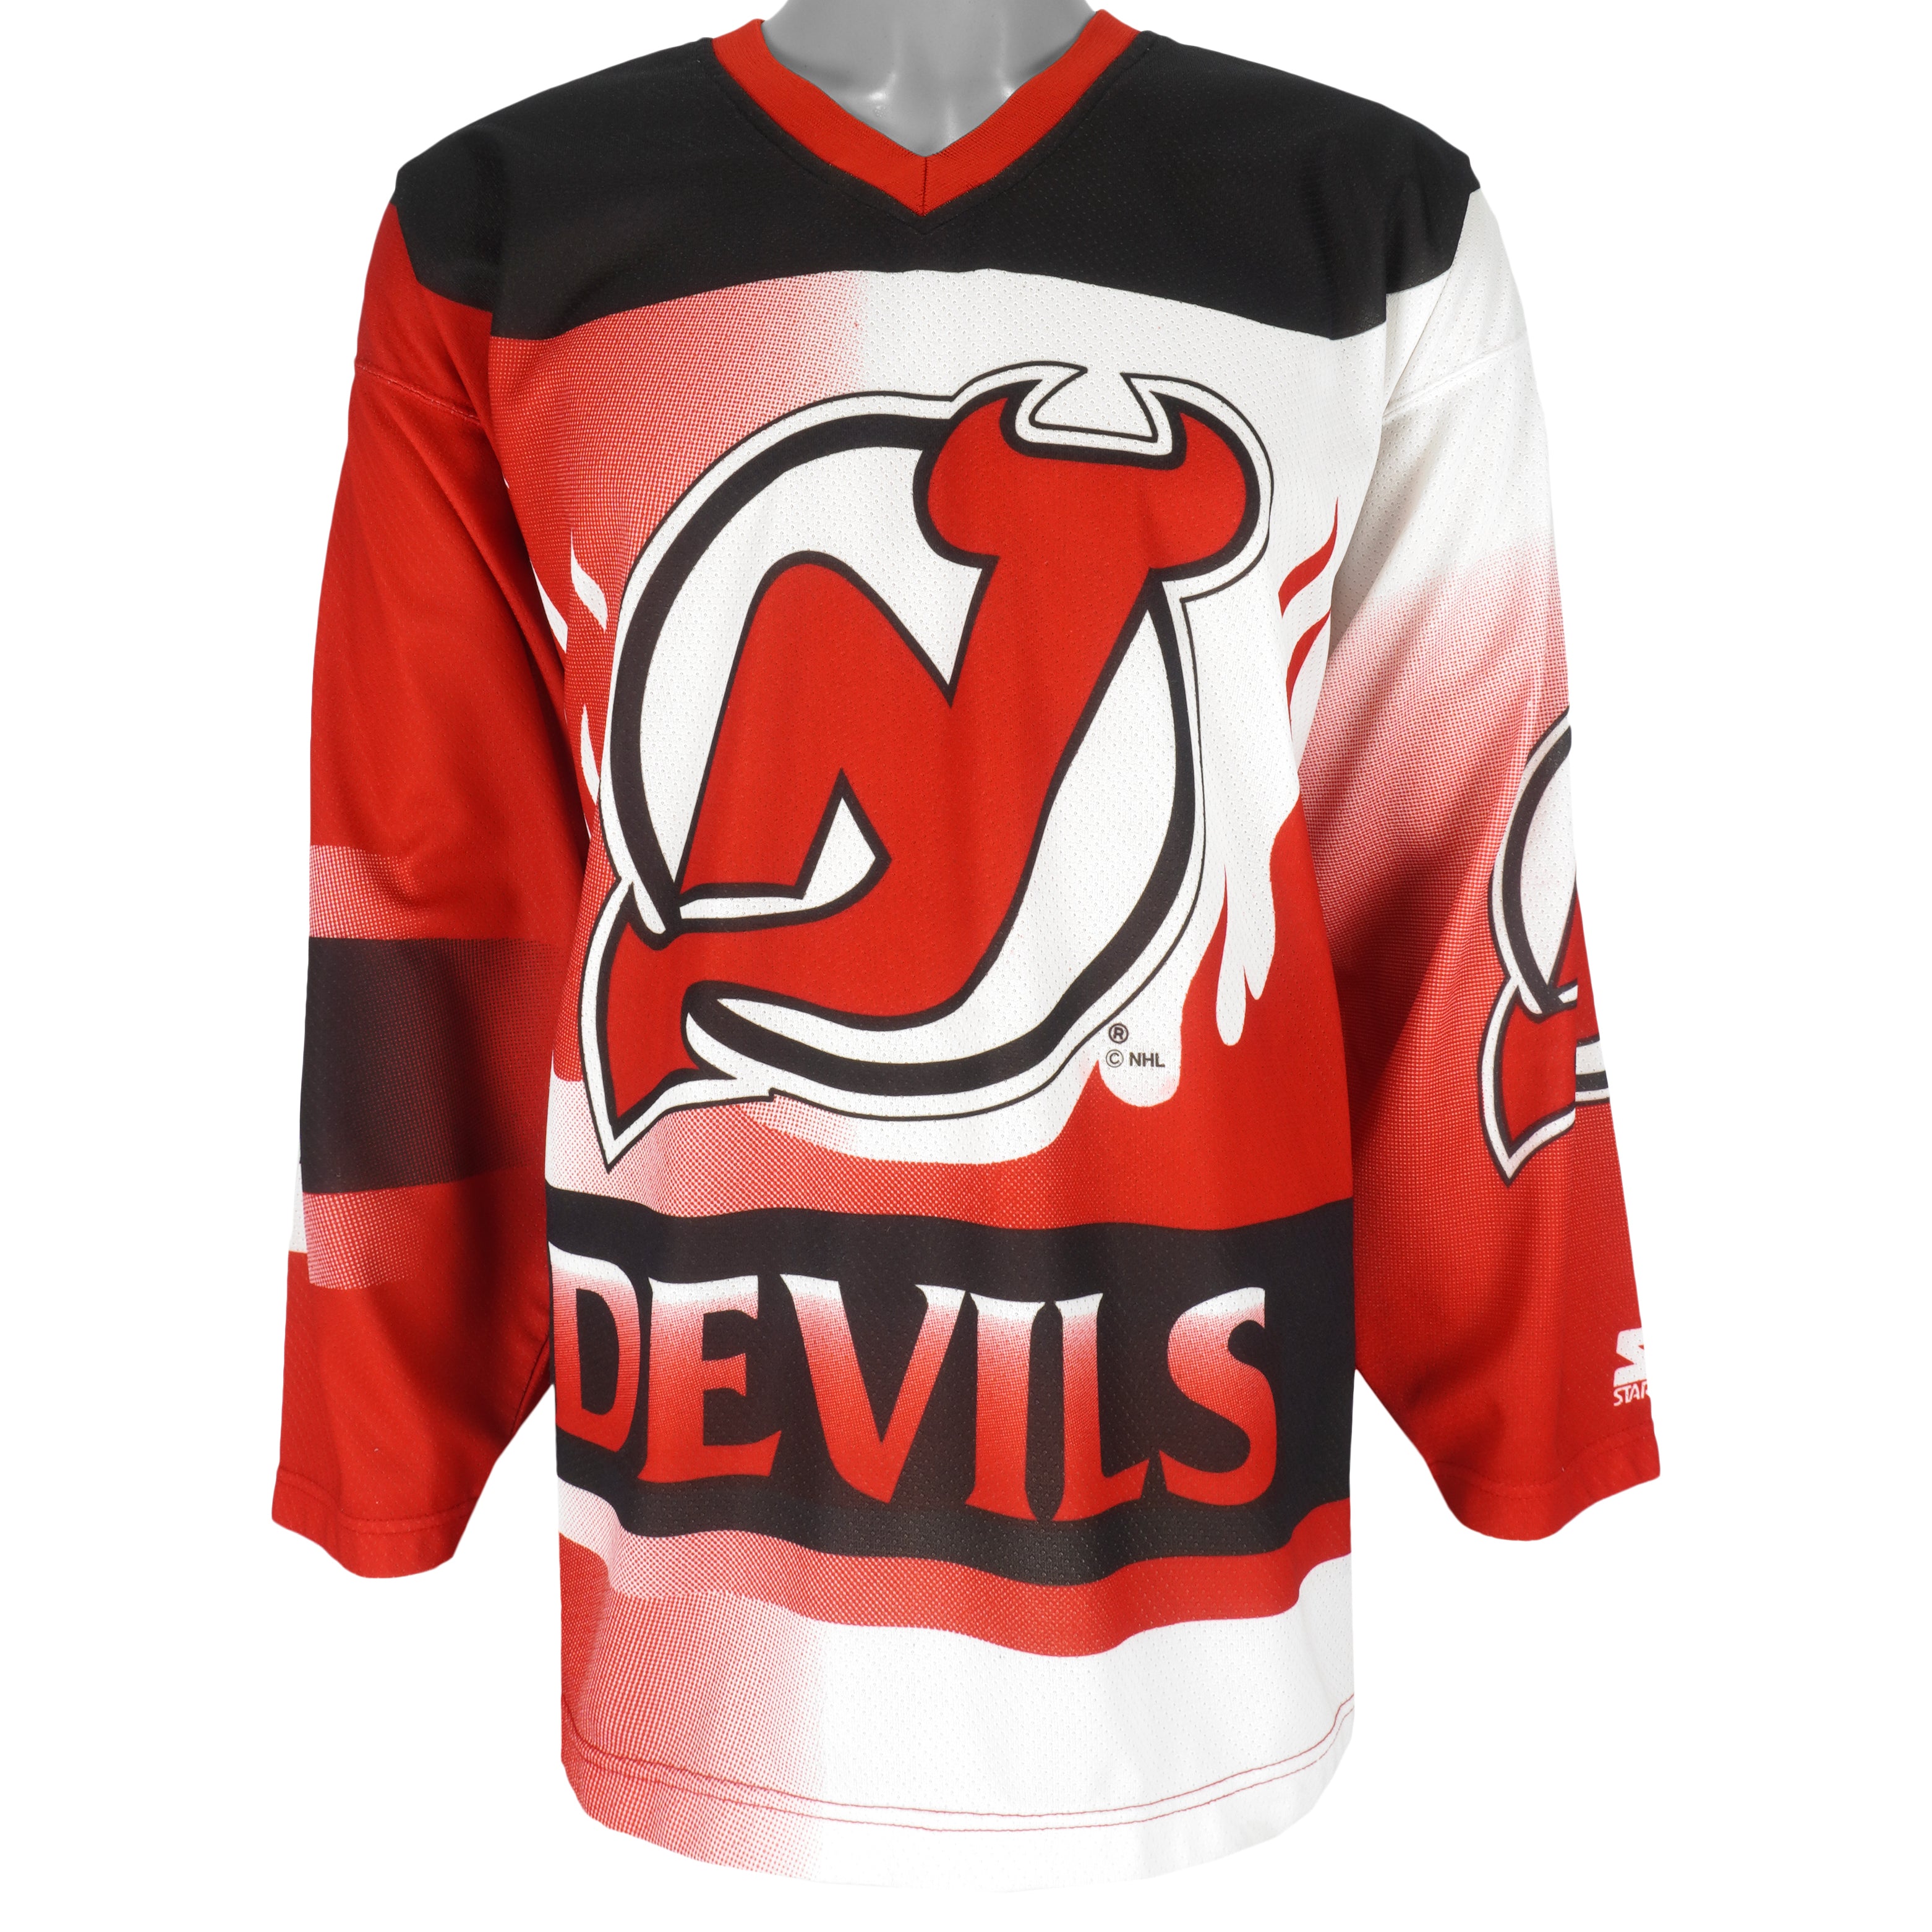 Vintage Starter New Jersey Devils (Large) Knit 90’s NHL Hockey Jersey Red